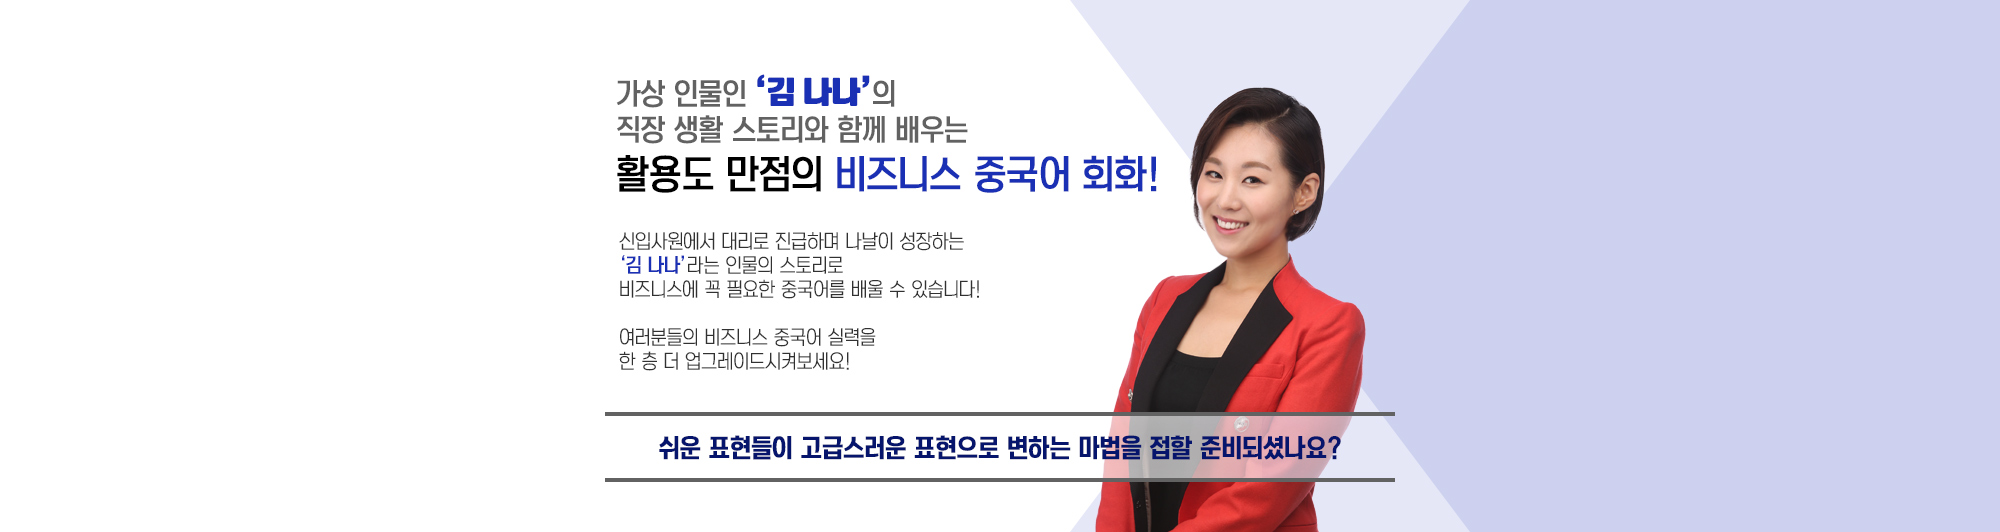 가상 인물인 '김 나나'의 직장 생활 스토리와 함께 배우는 활용도 만점의 비즈니스 중국어 회화!